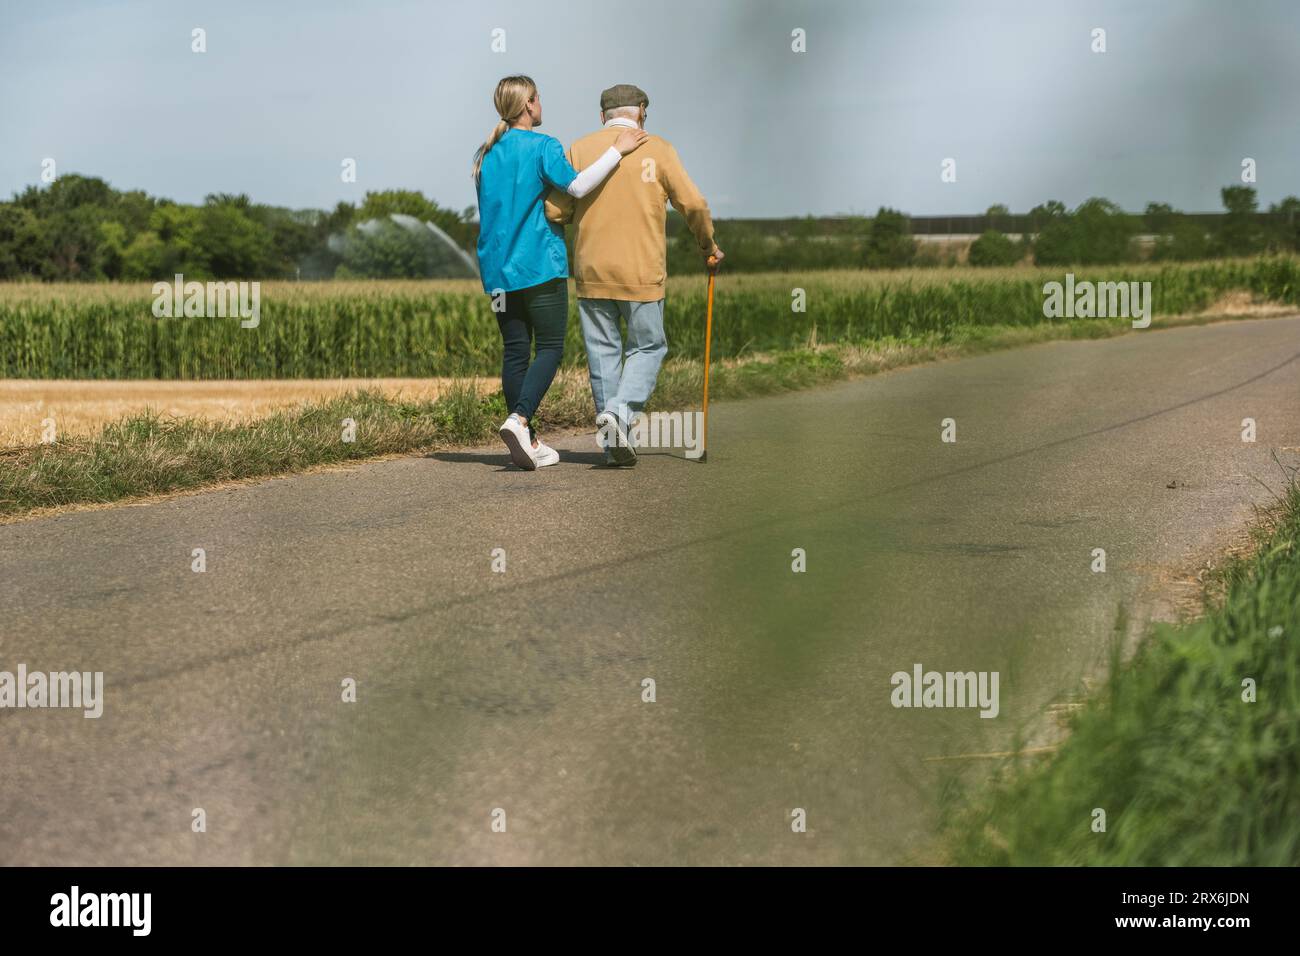 Operatore sanitario che cammina con uomo anziano sulla strada nella giornata di sole Foto Stock